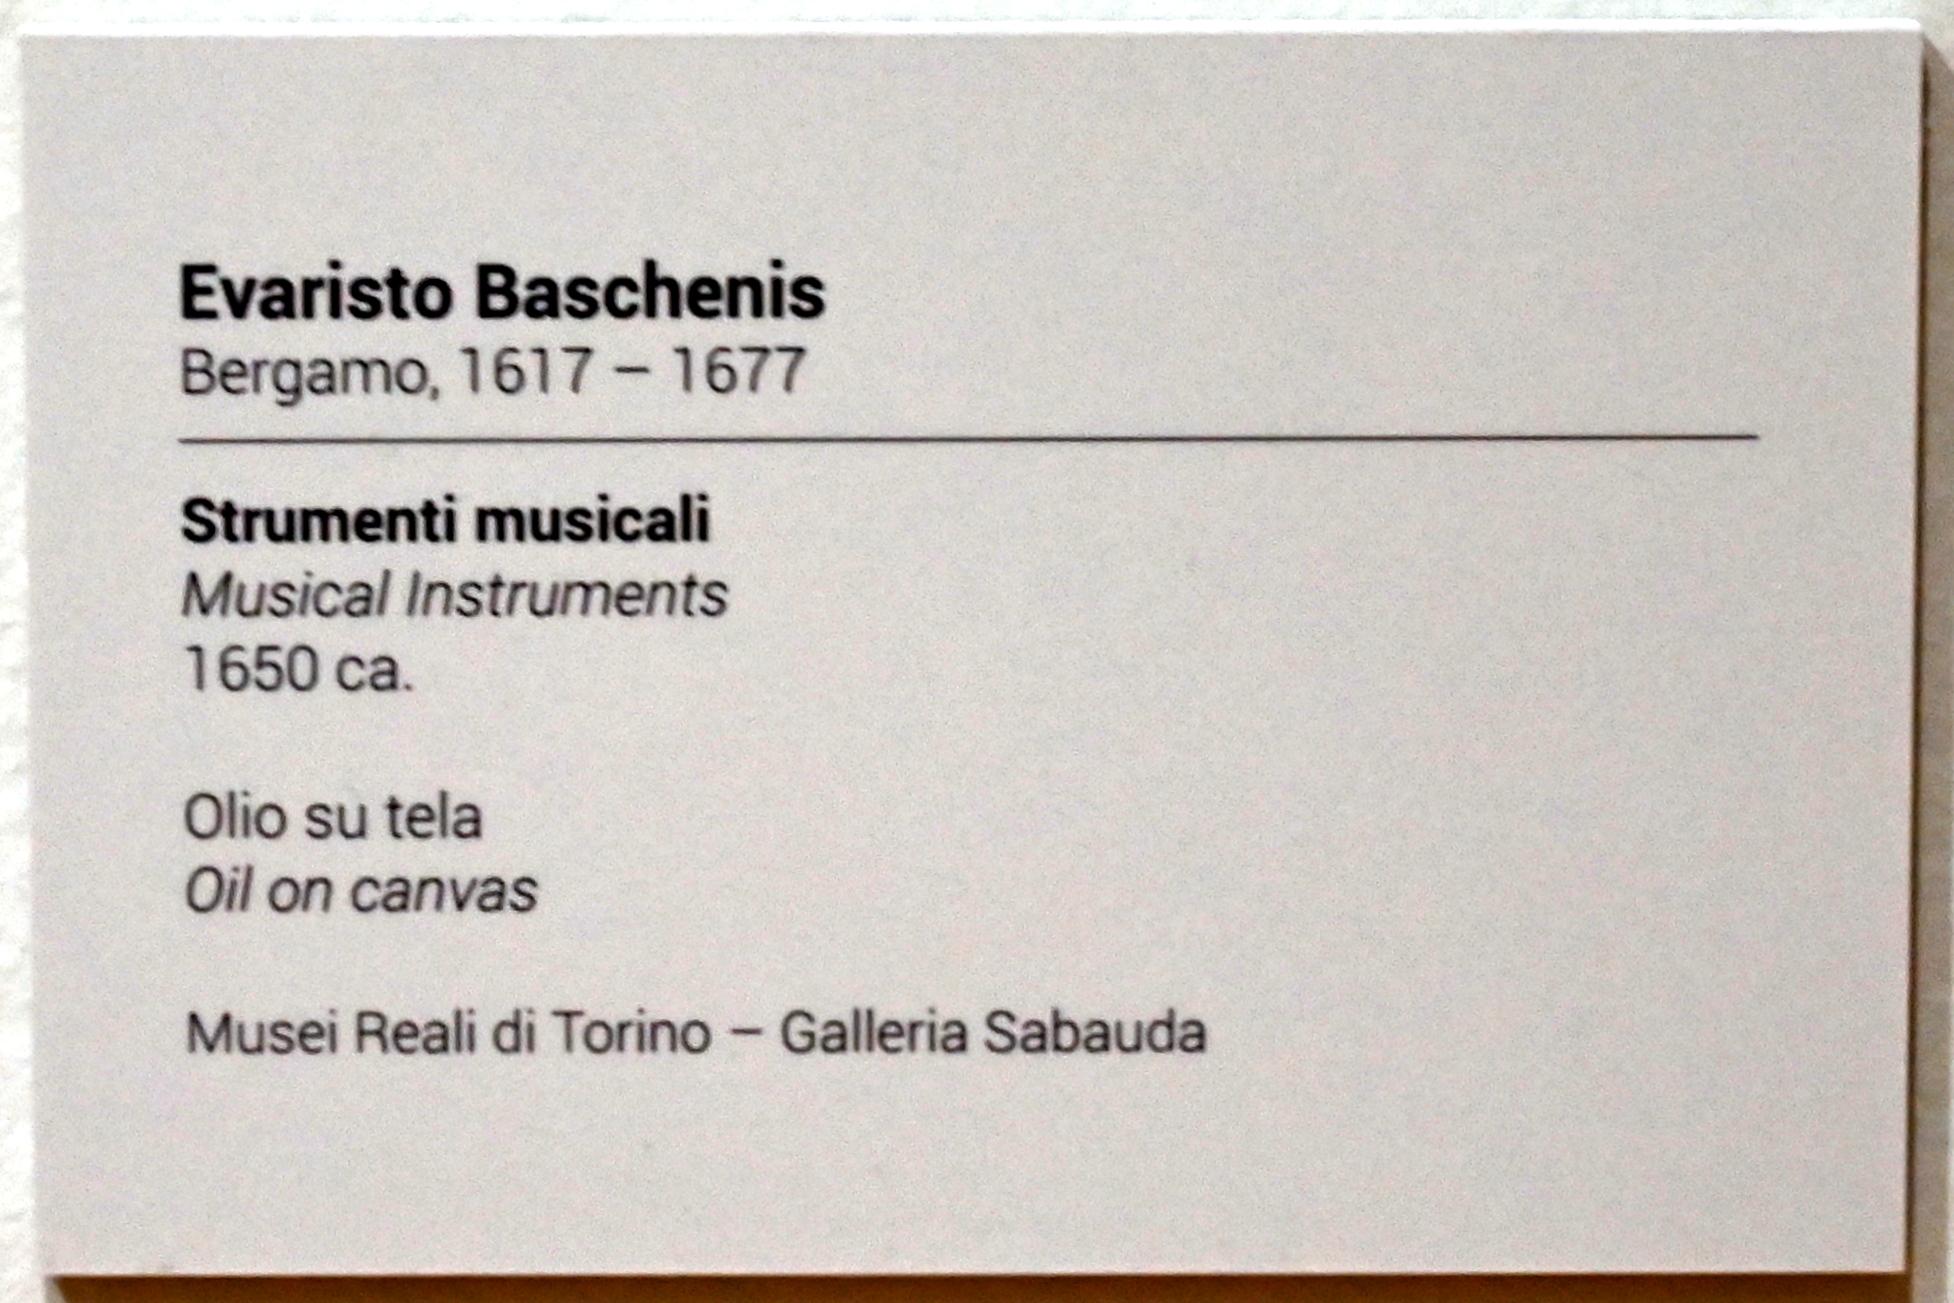 Evaristo Baschenis: Musikinstrumente, um 1650, Bild 2/4